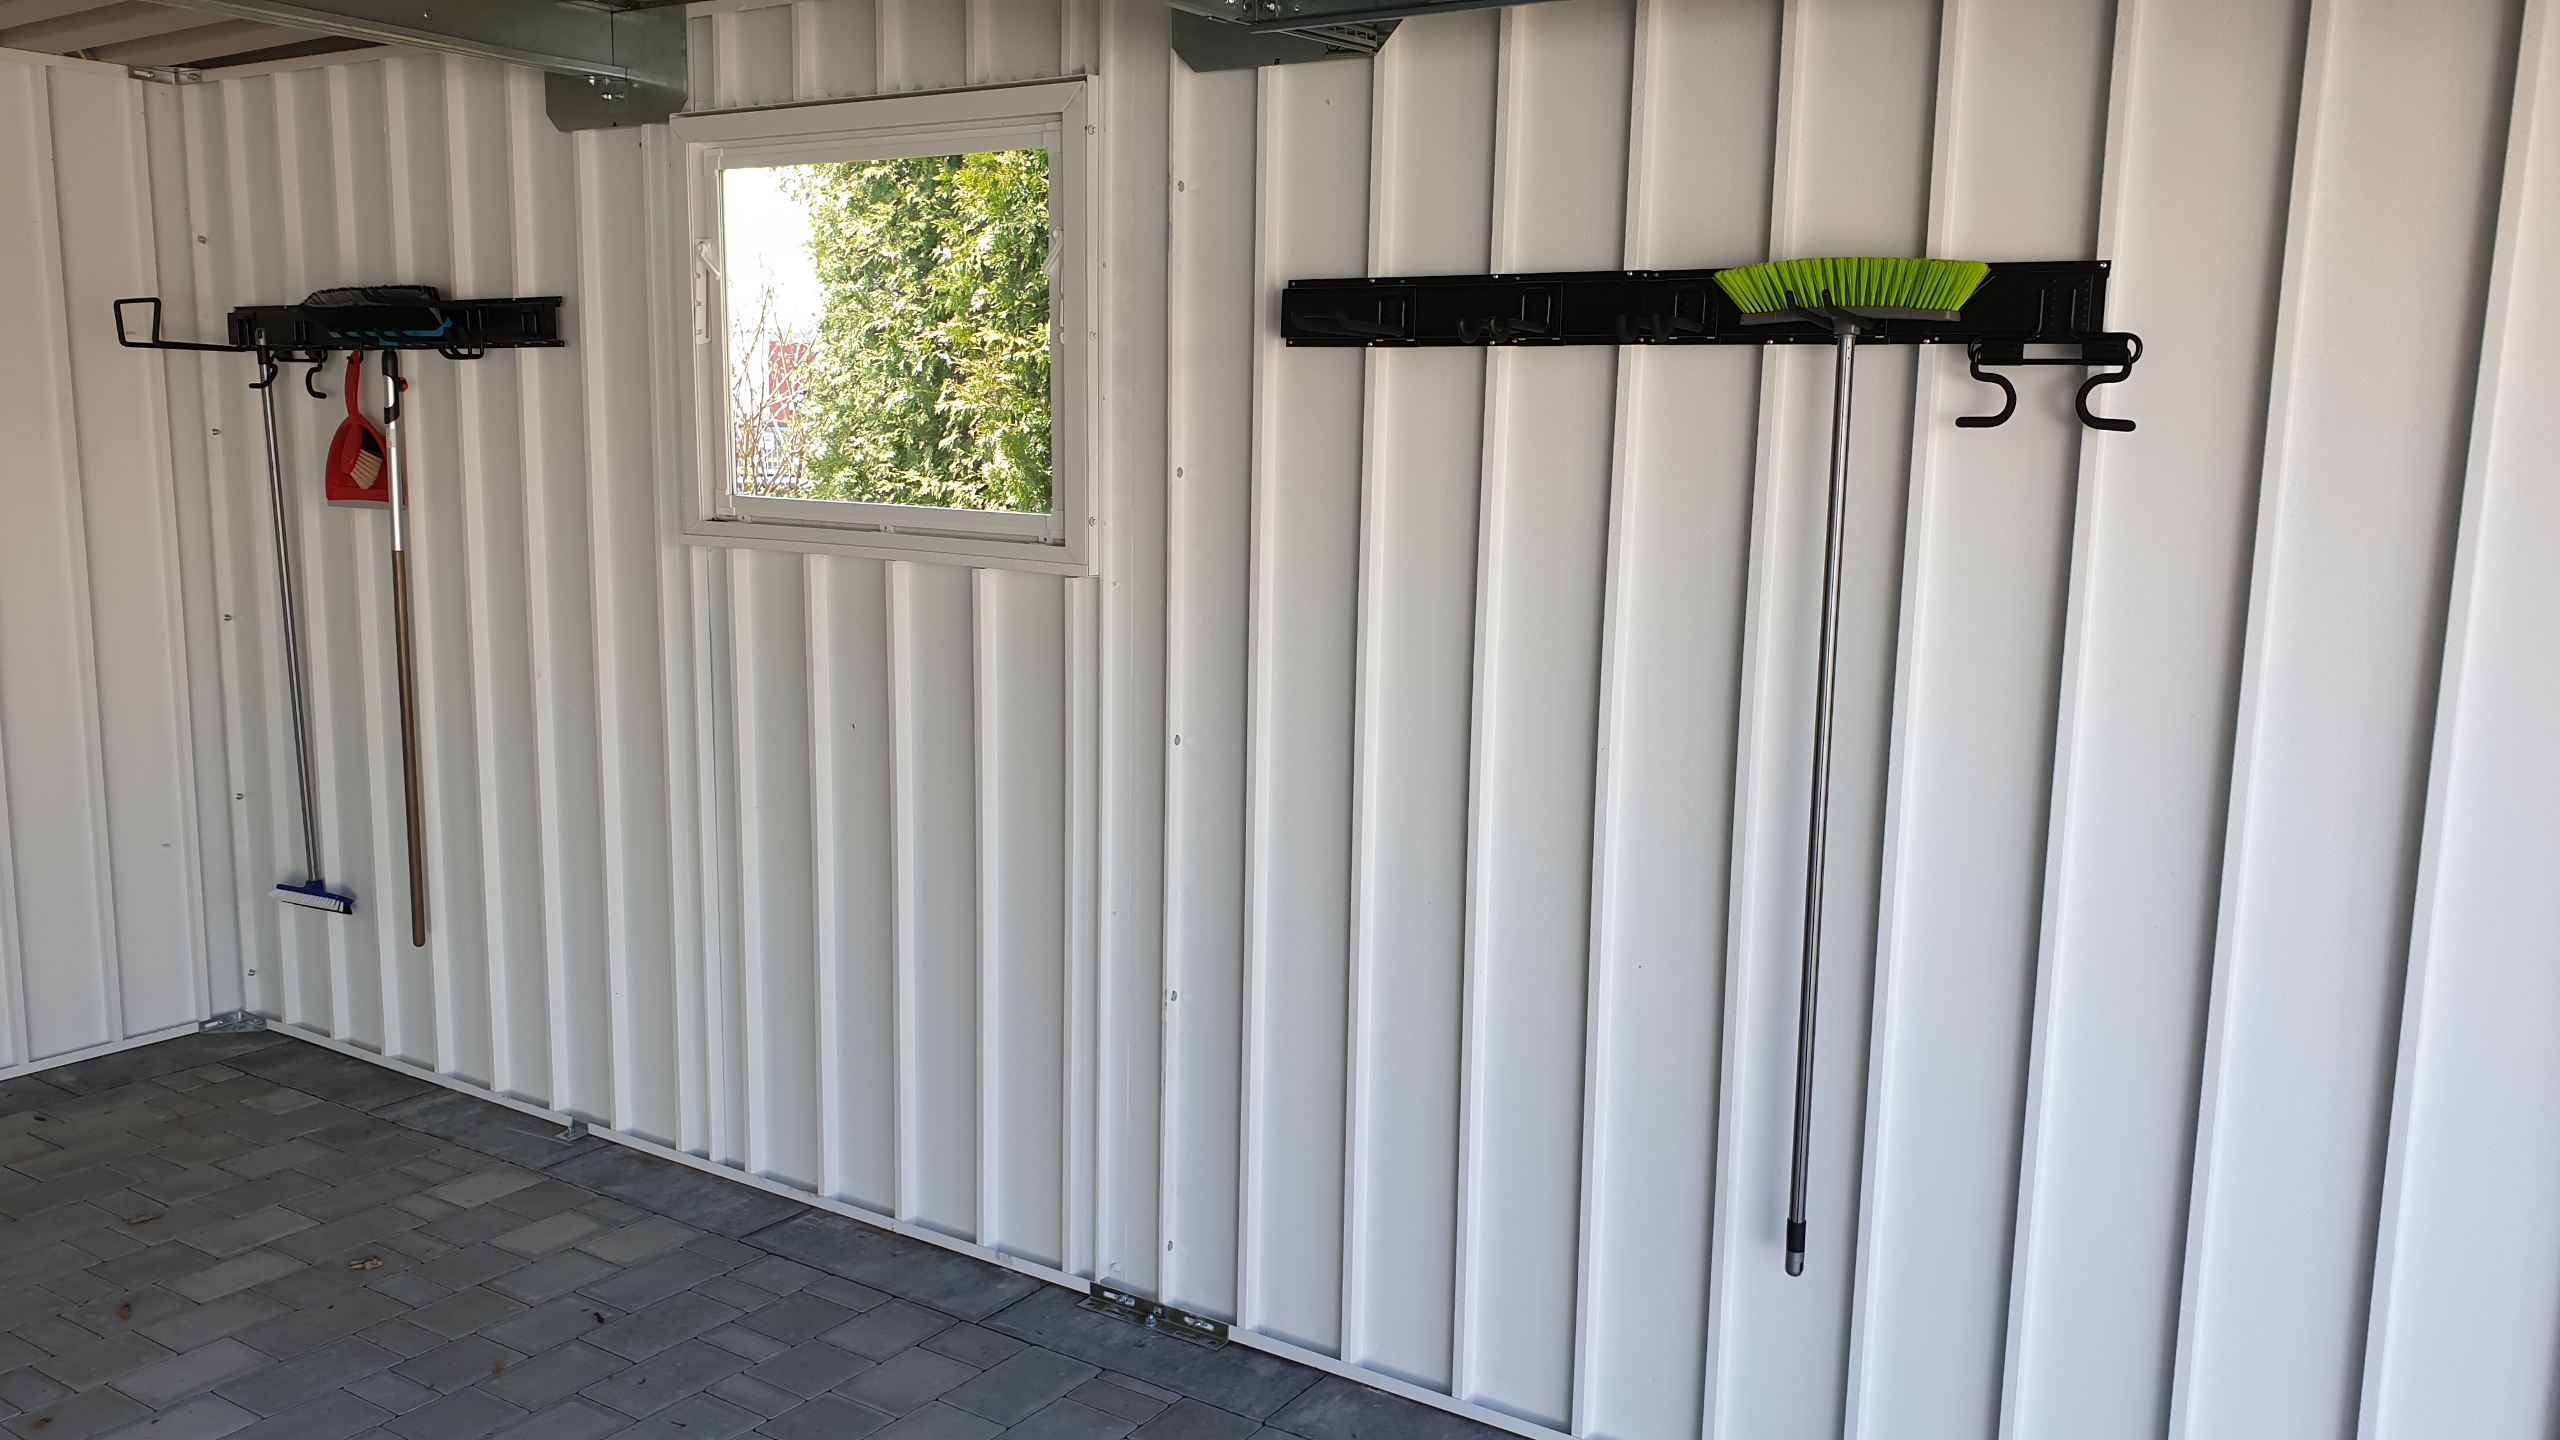 Wände einwandig (Innenansicht) mit Beispiel für Ordnungssysteme - Innenansicht Garage - Ausstellung BRANDL